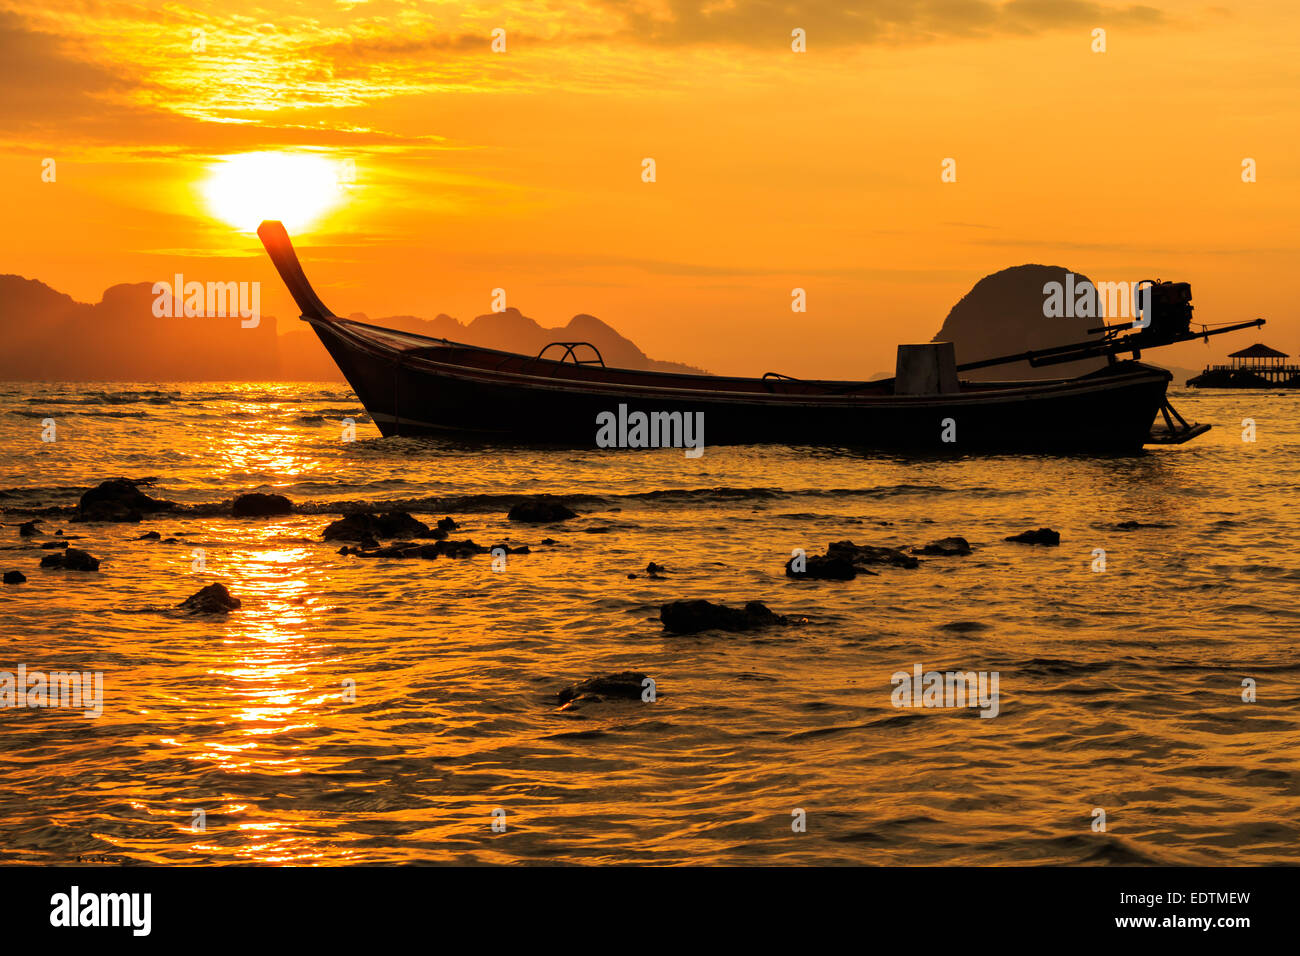 Sunrise at tip of boat at Trang , Thailand Stock Photo